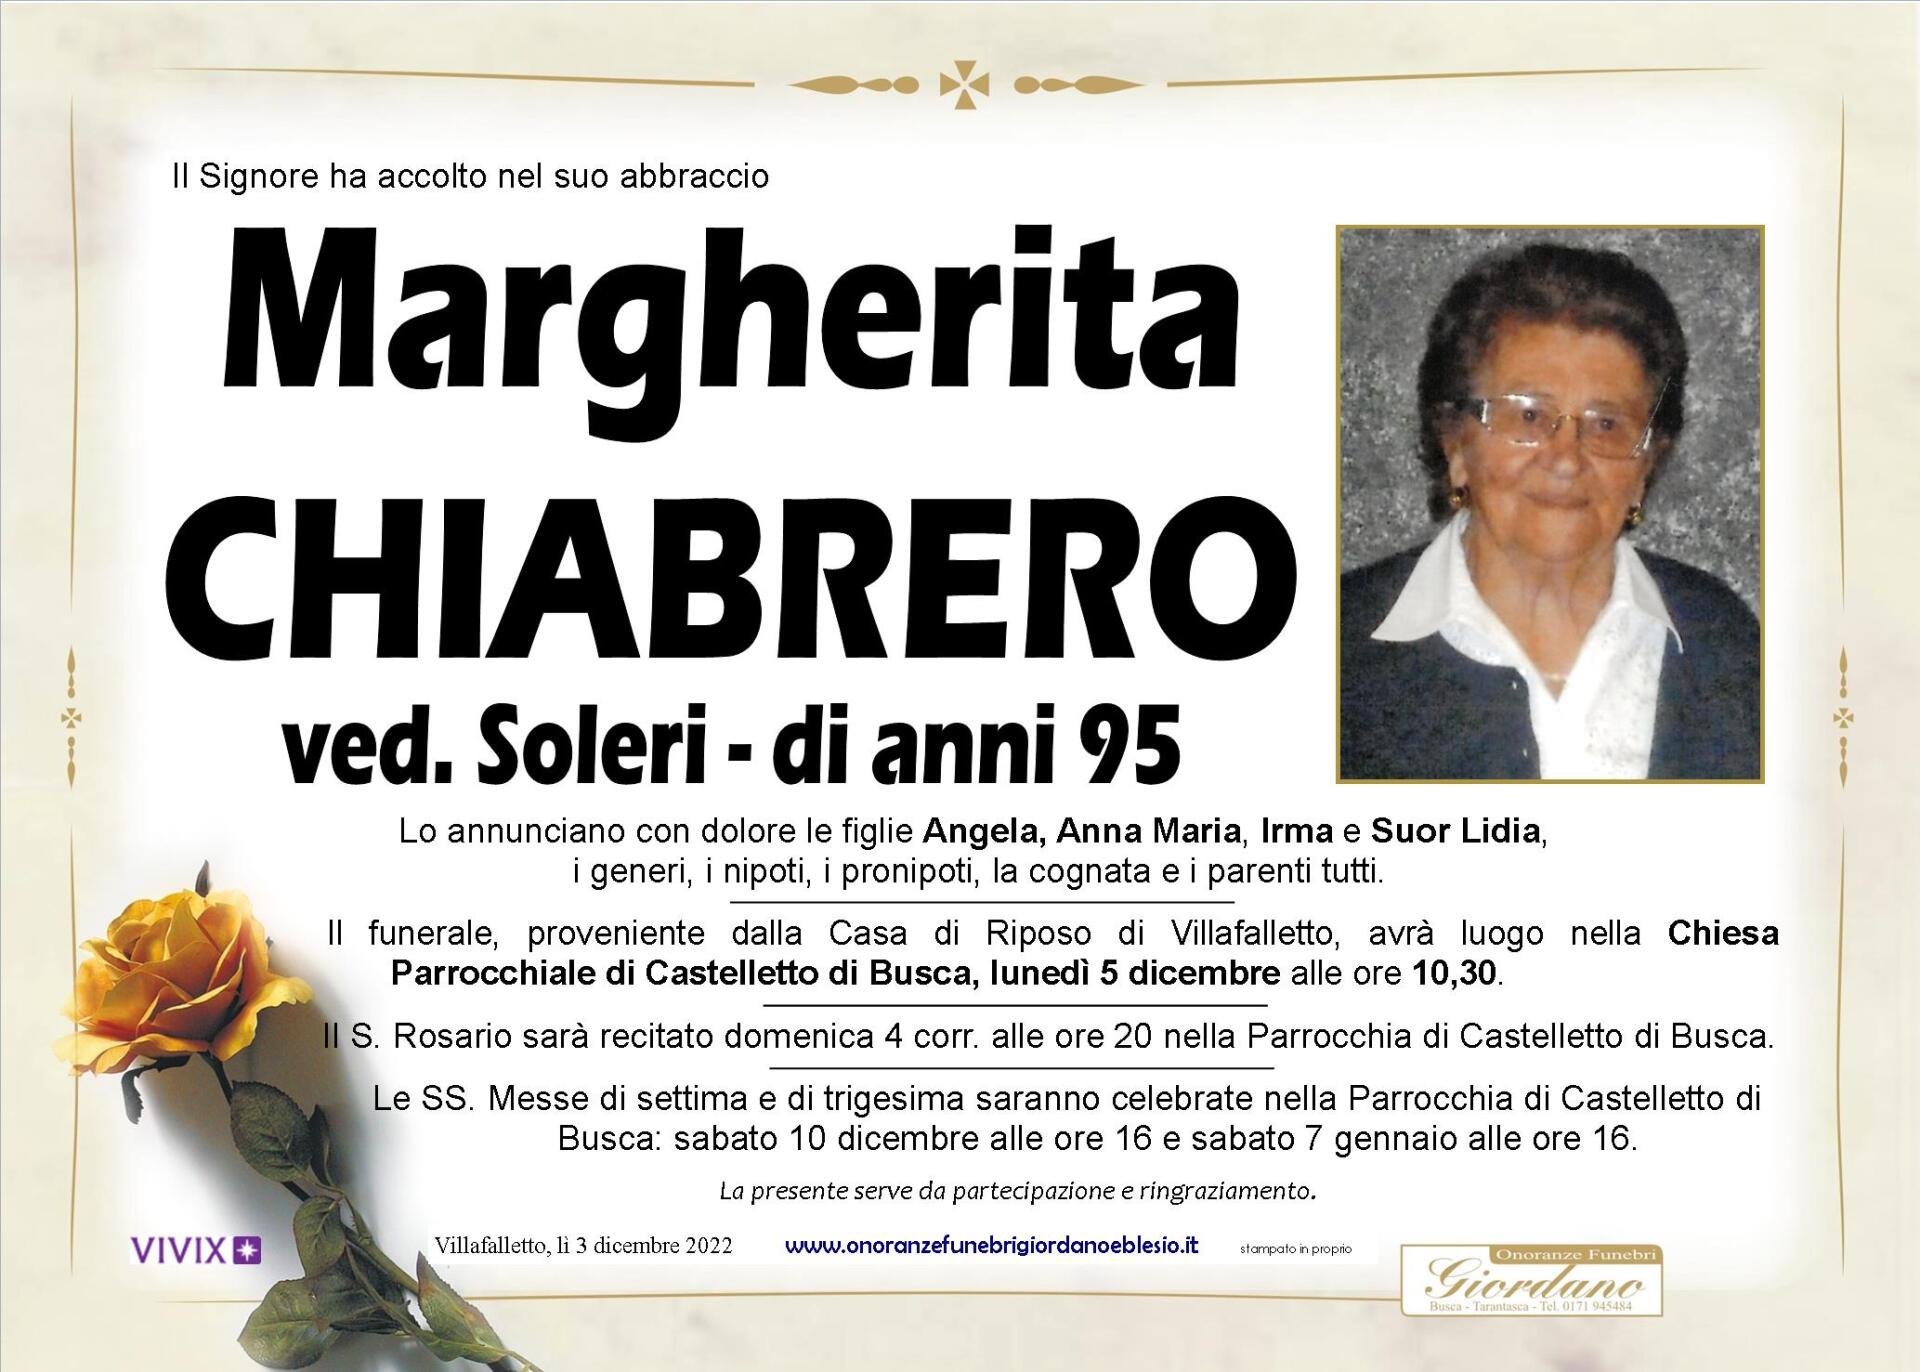 necrologio CHIABRERO Margherita ved. Soleri